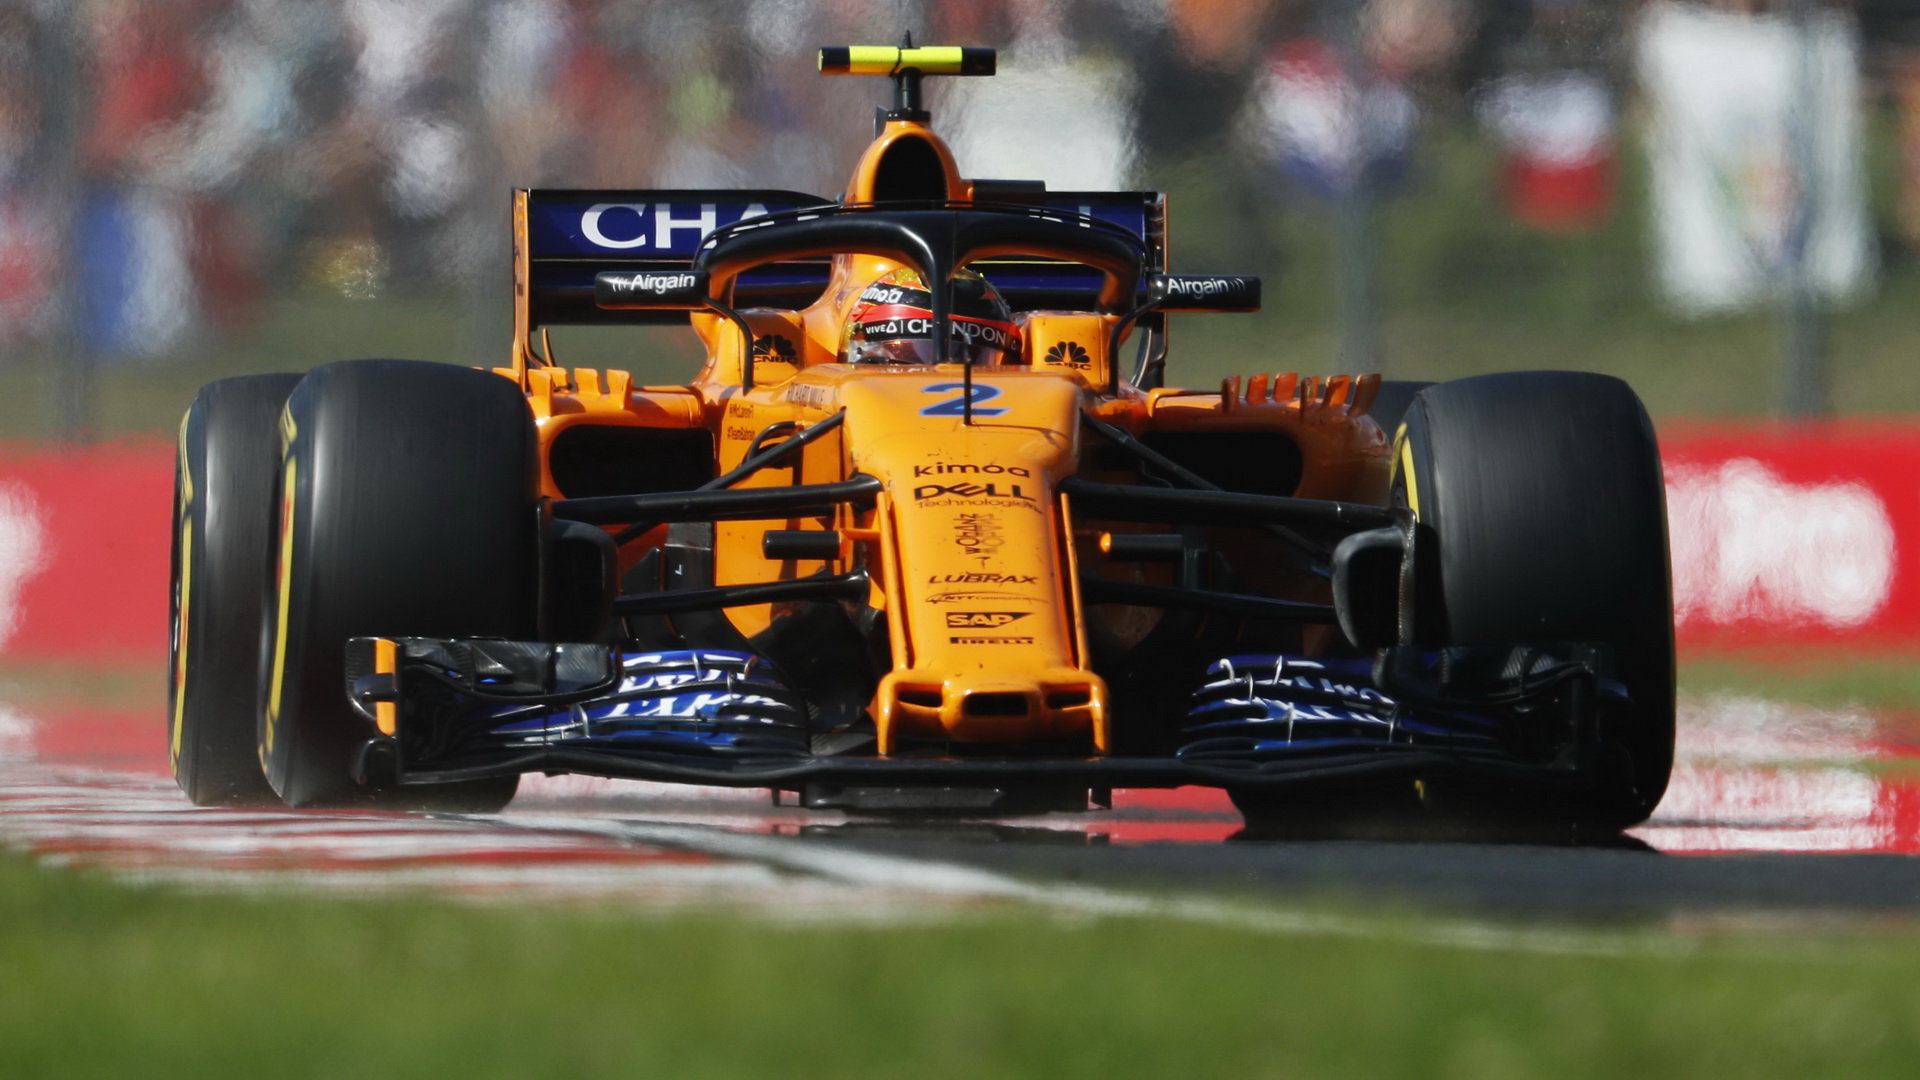 McLarenu svědčí spíše pomalé okruhy, na těch rychlých s dlouhými rovinkami kvůli neefektivní aerodynamice propadá